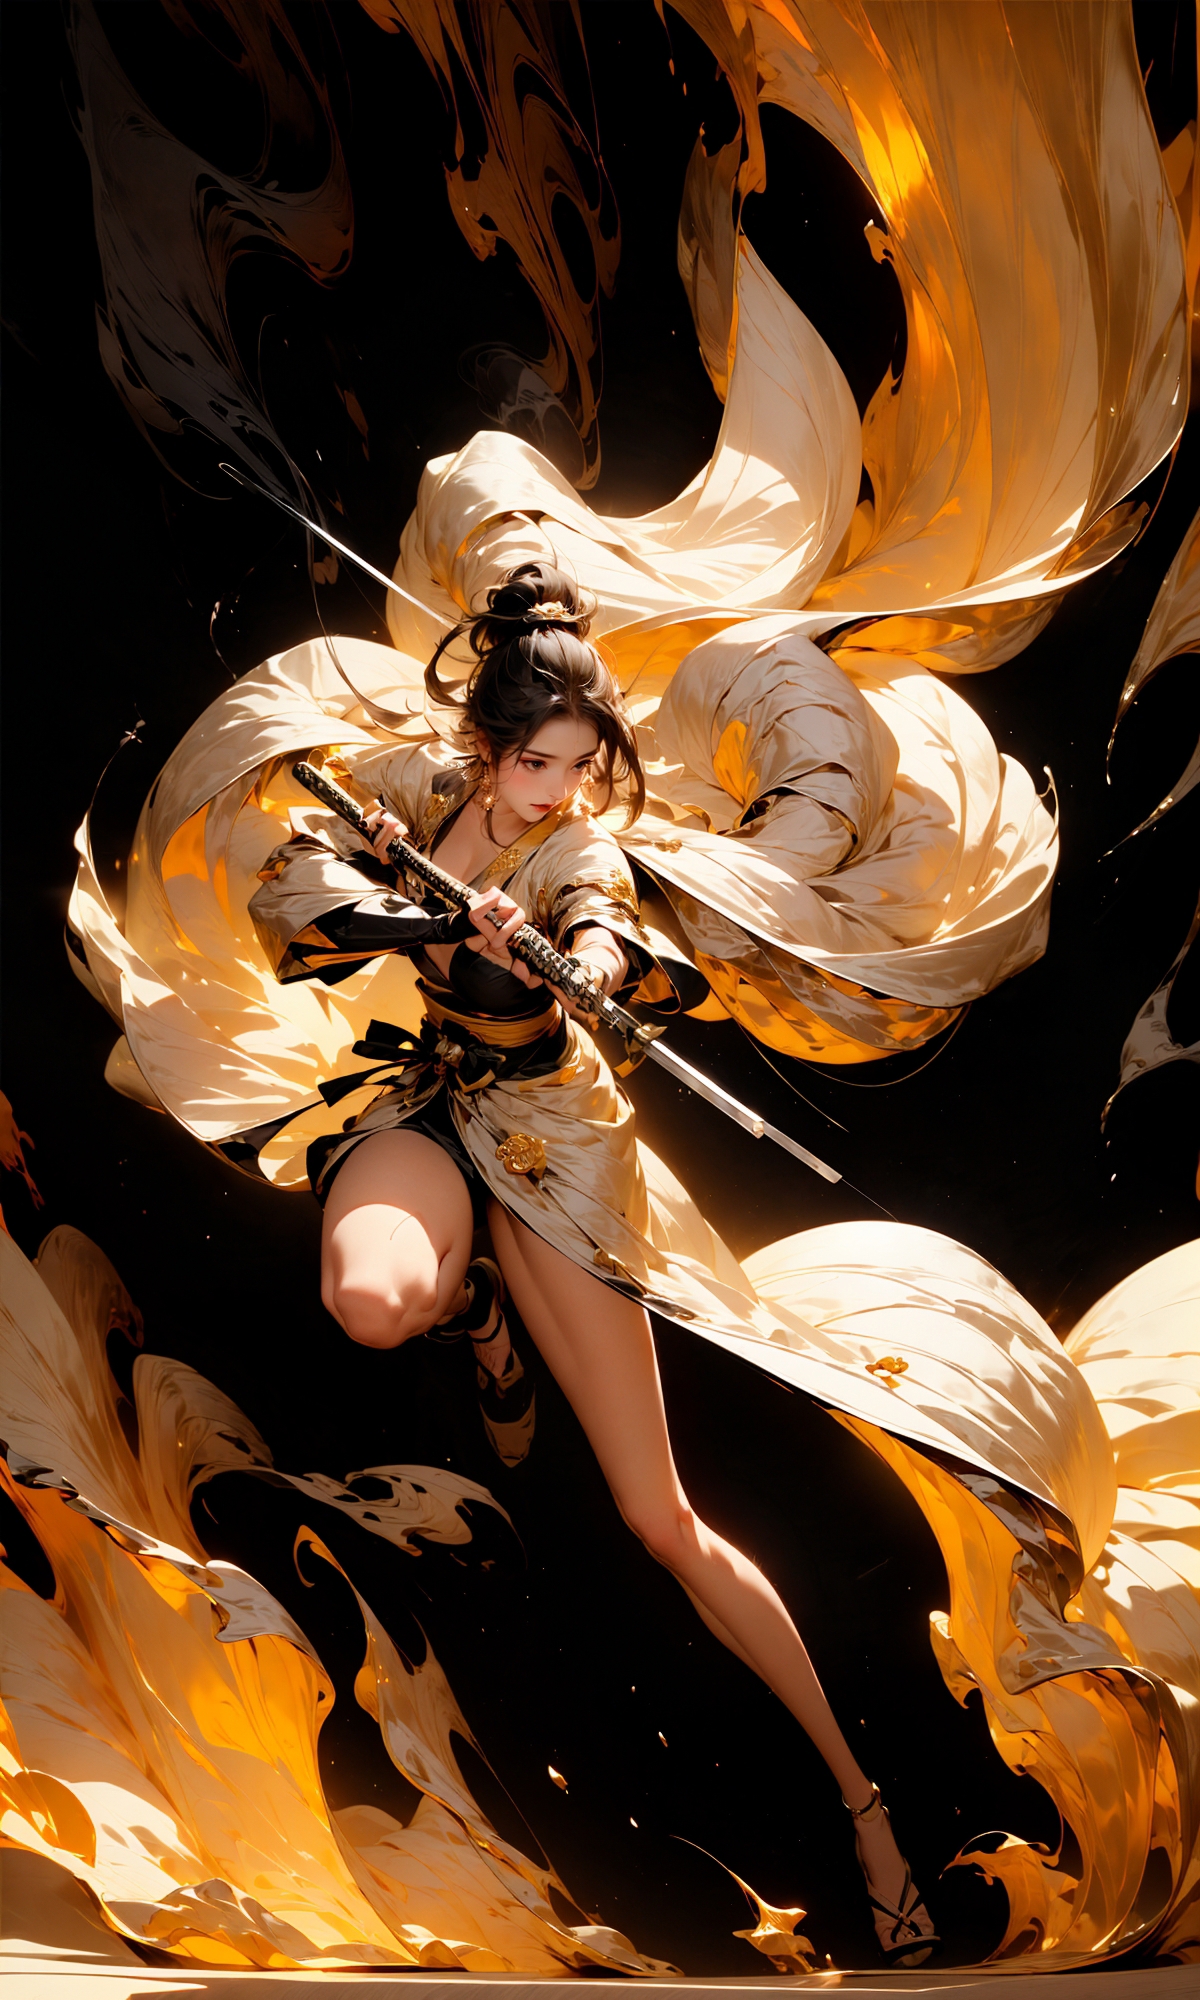 绪儿-菊与刀 The Chrysanthemum and the Blade image by XRYCJ